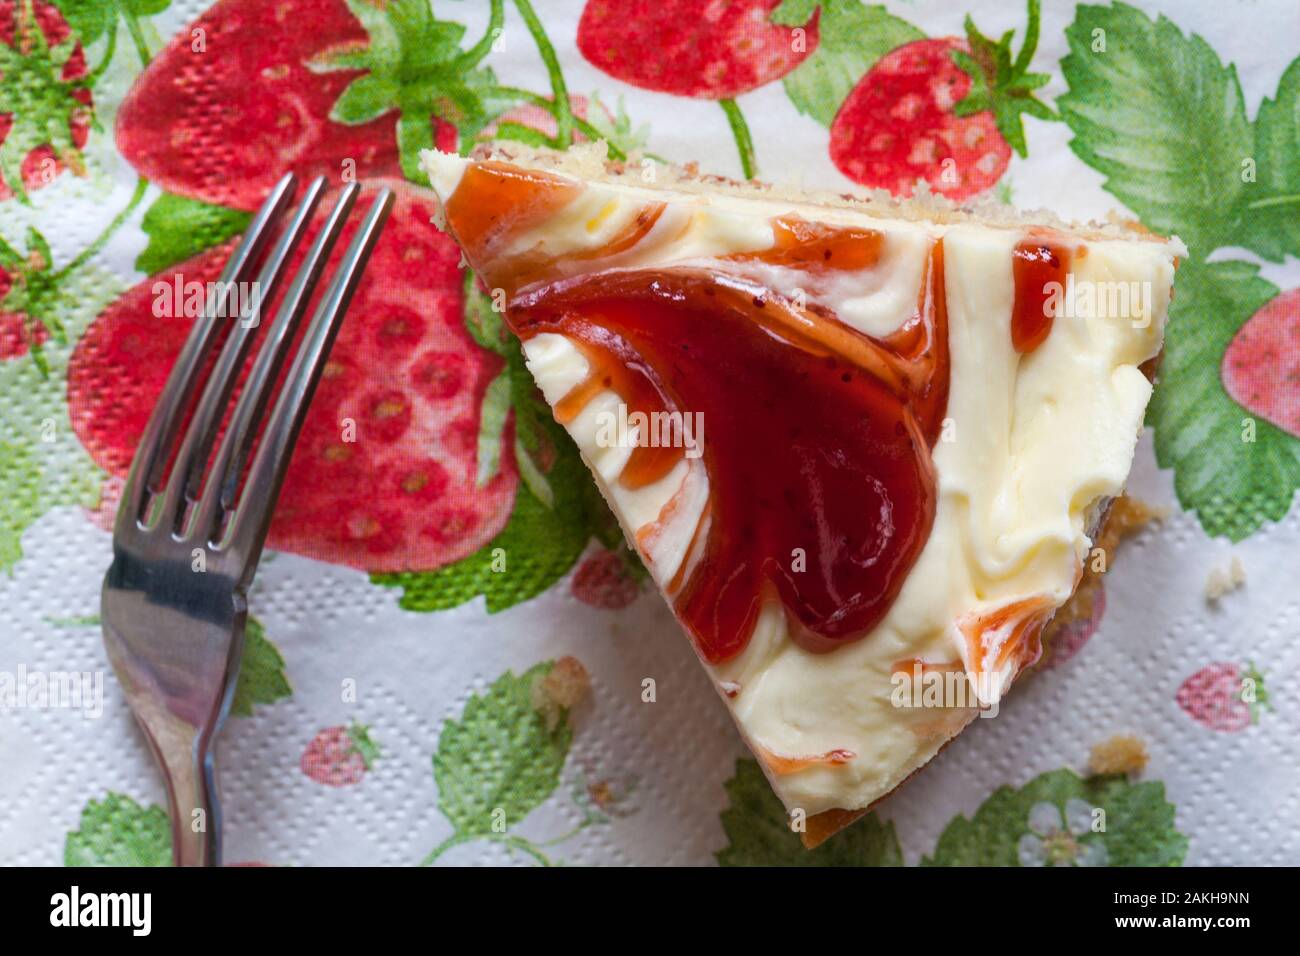 Stück M&S Strawberry & Cornish Clotted Cream Kuchen auf serviette Serviette mit Gabel bereit zu essen Stockfoto